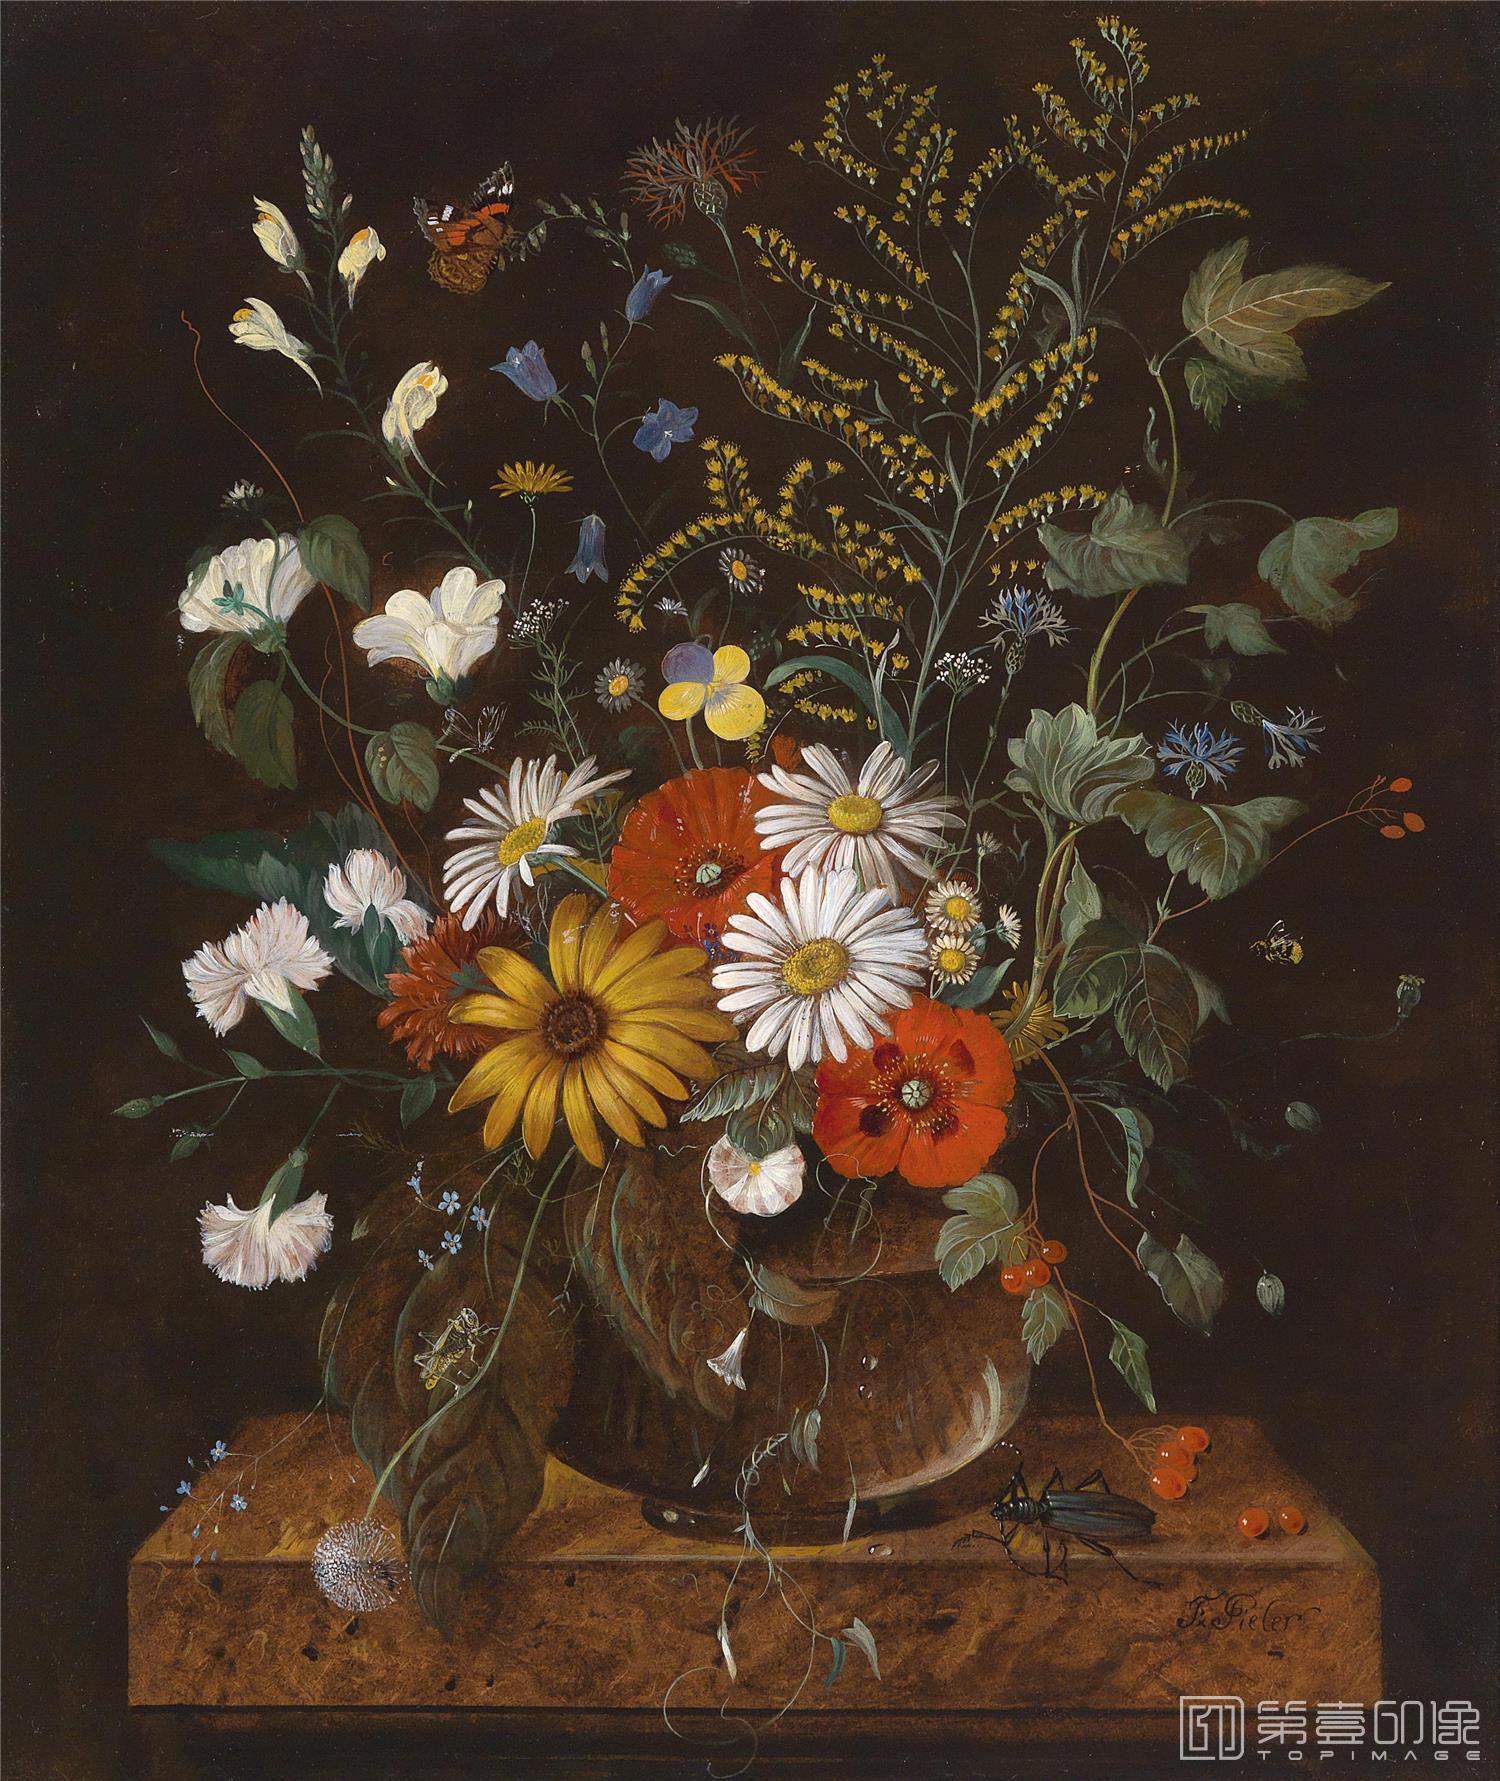 花之王者 古典花卉油画集 696 第壹印像